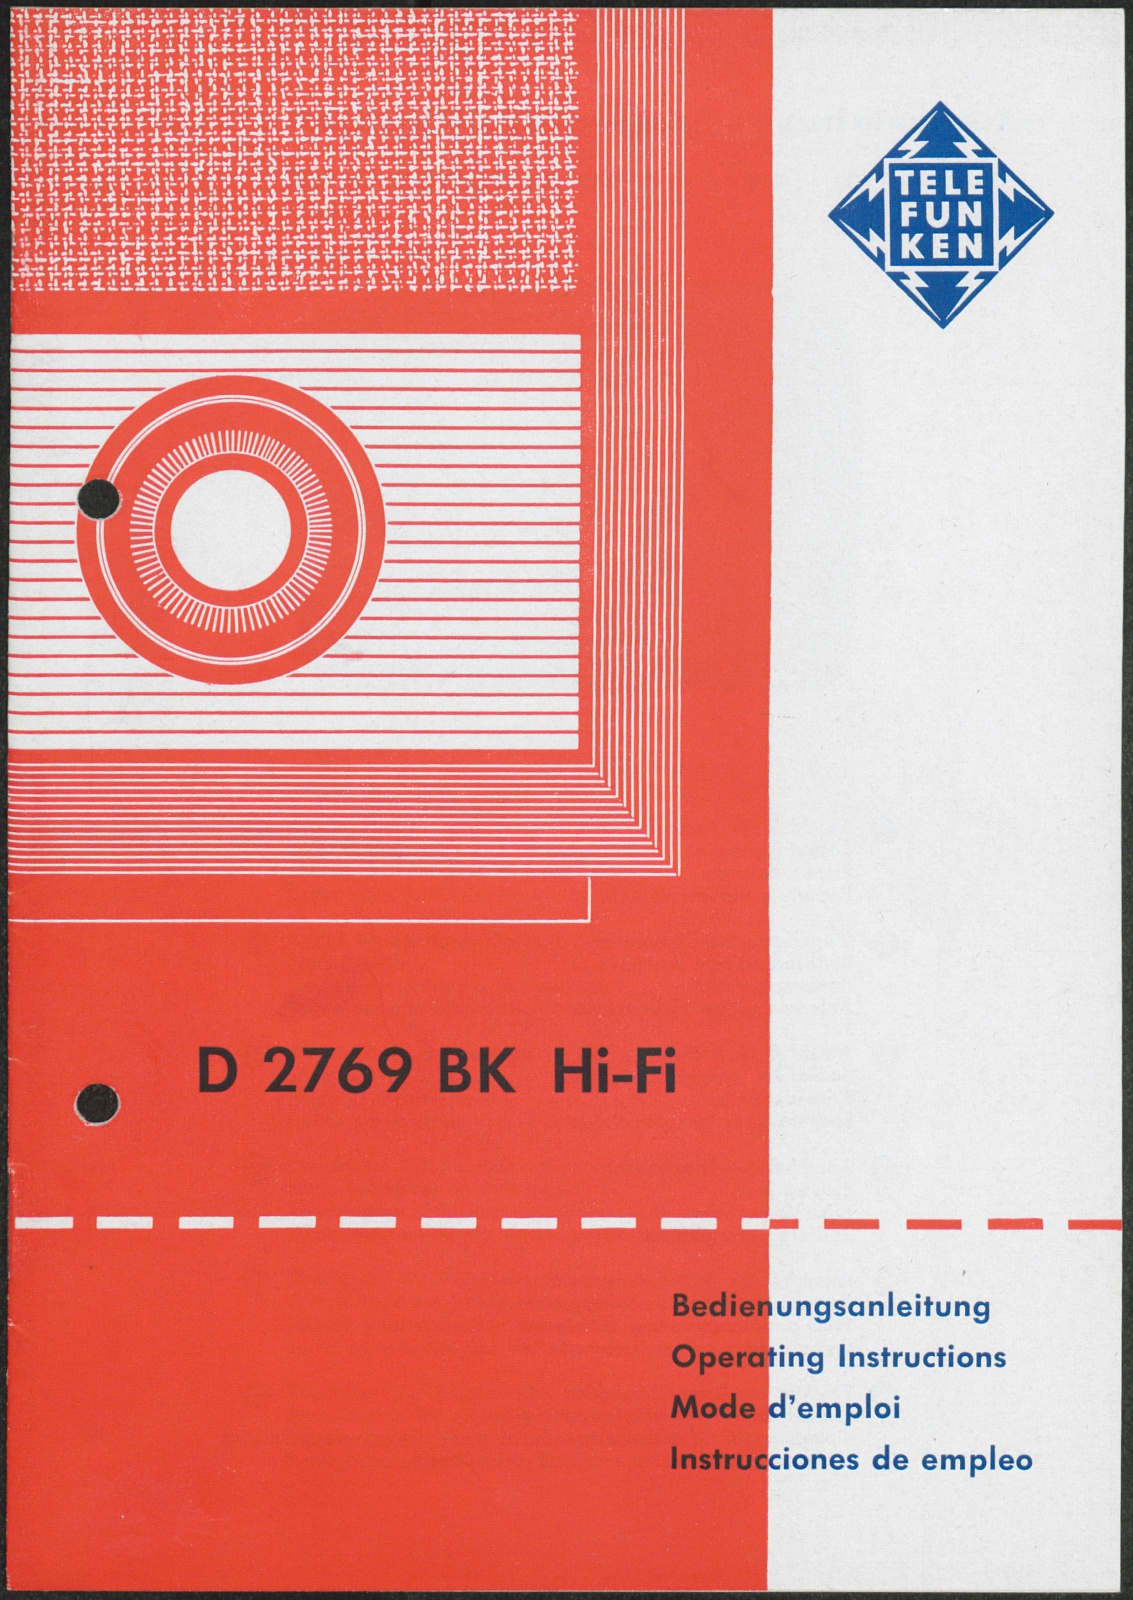 Bedienungsanleitung: Bedienungsanleitung Telefunken D 2769 BK Hi-Fi (Stiftung Deutsches Technikmuseum Berlin CC0)